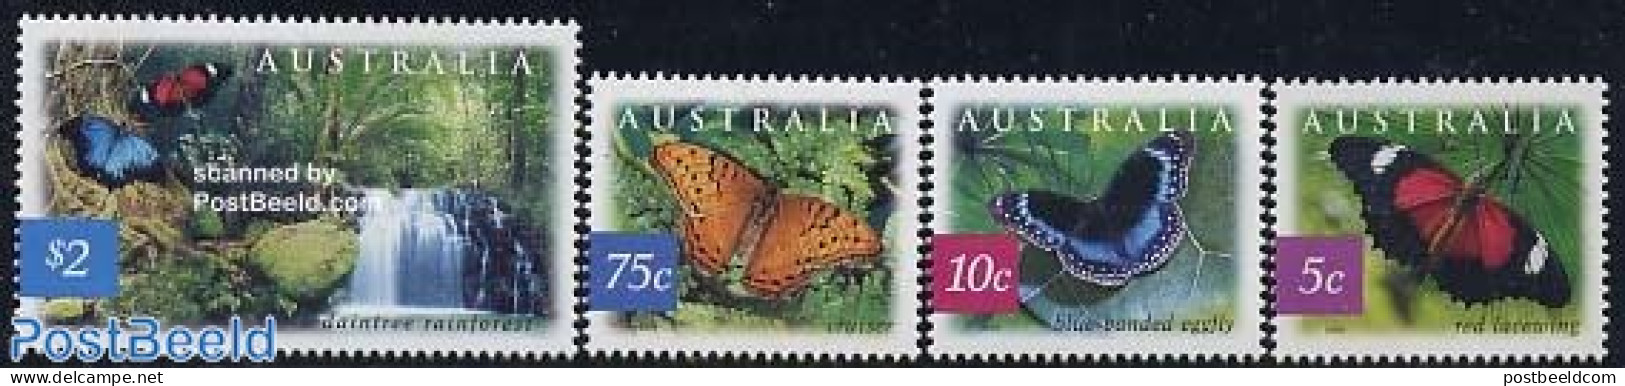 Australia 2004 Butterflies 4v, Mint NH, Nature - Butterflies - Water, Dams & Falls - Nuevos